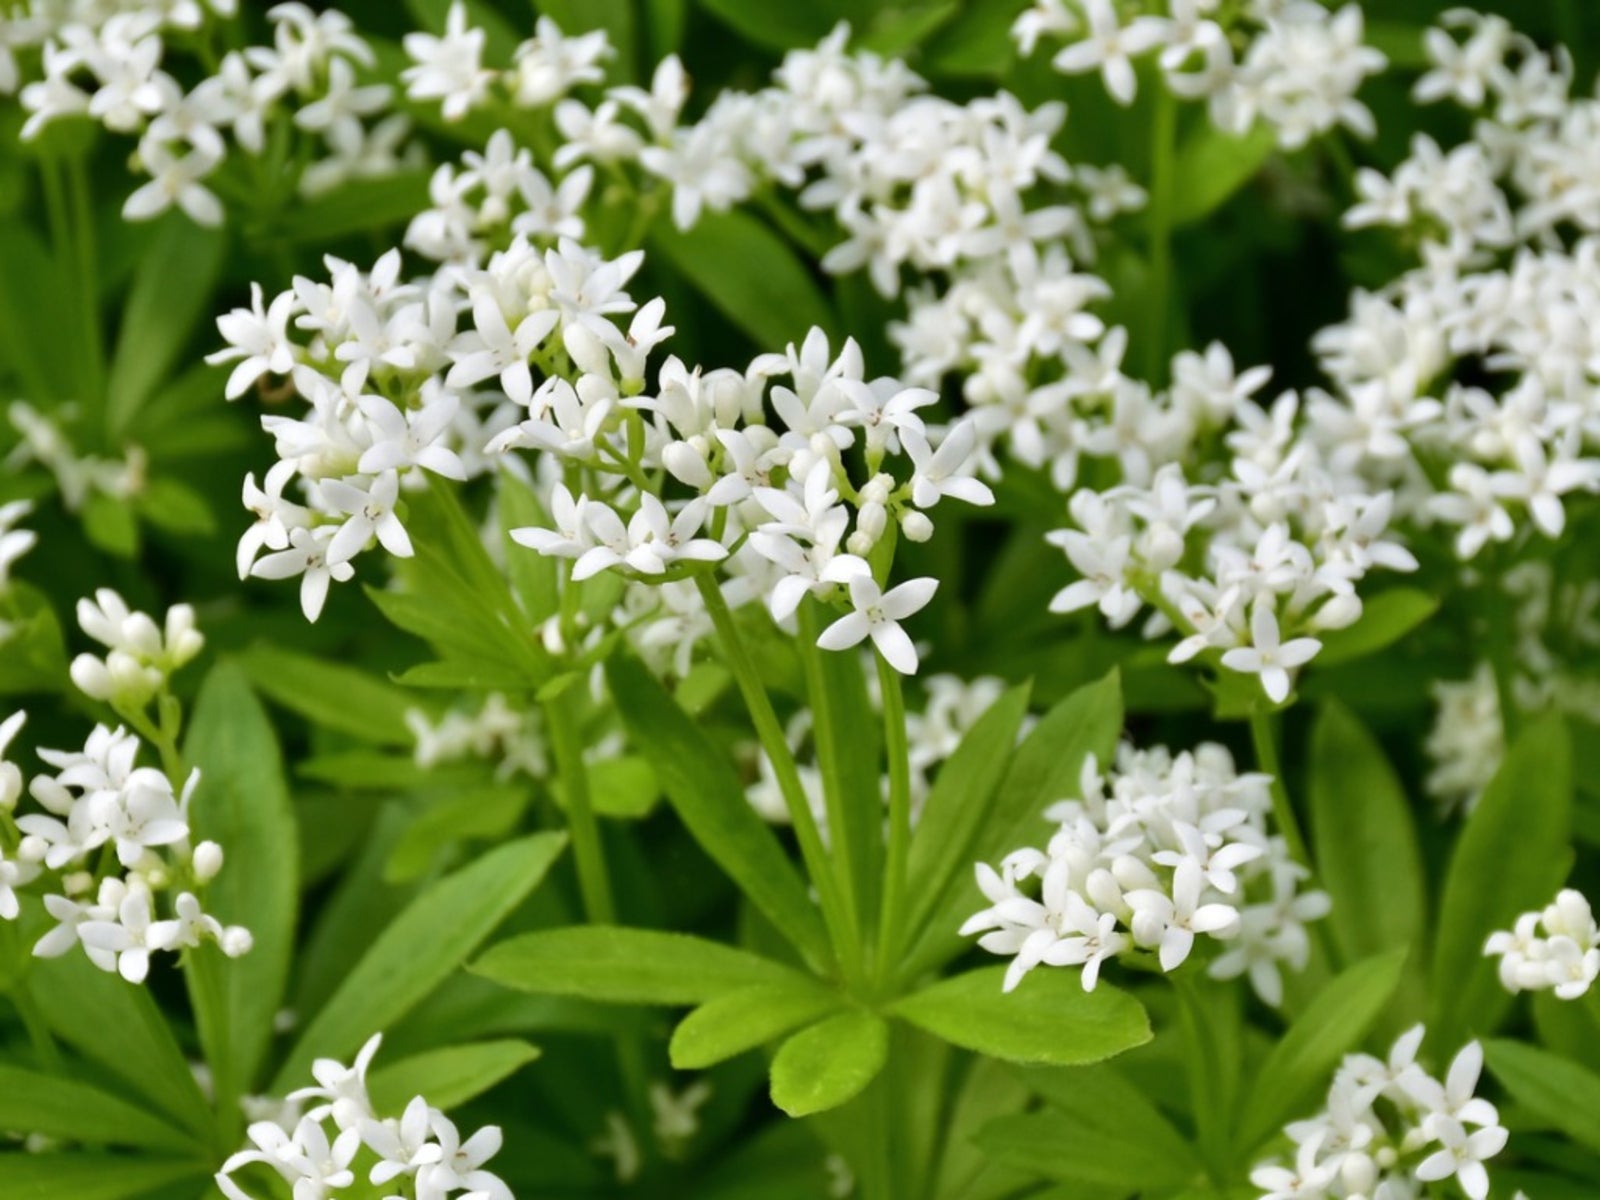 SWEET WOODRUFF Galium Groundcover White Flowers Odoratum Wildflower 5 Seeds 